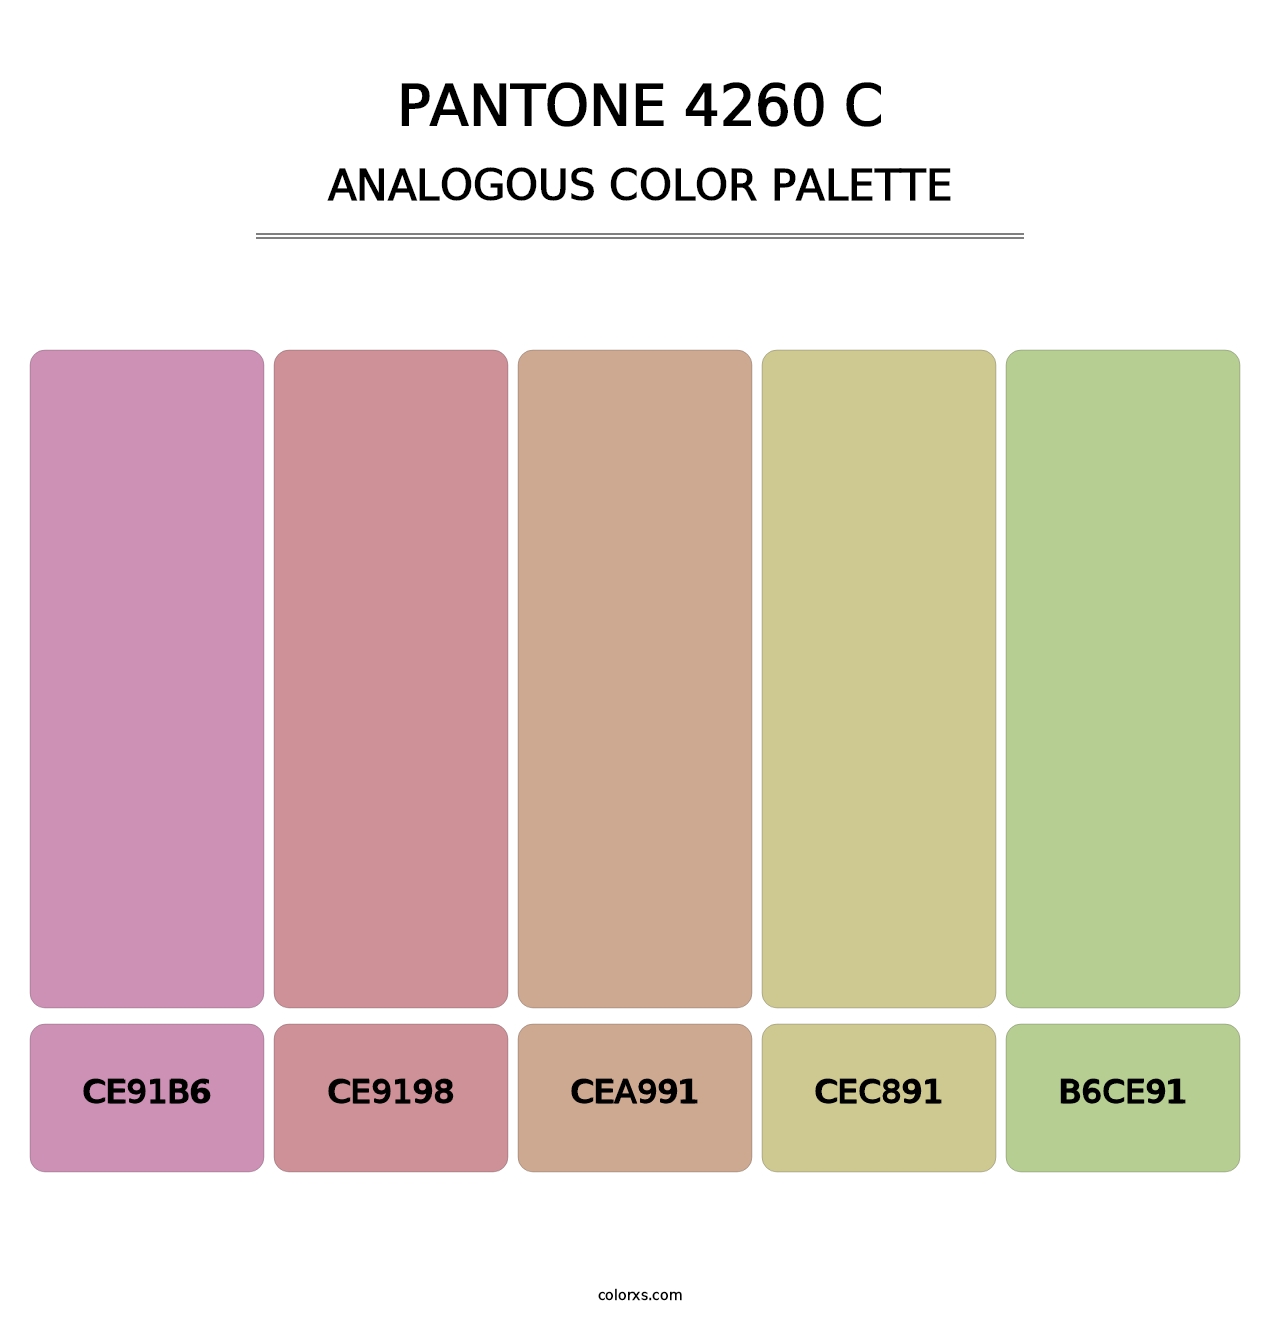 PANTONE 4260 C - Analogous Color Palette